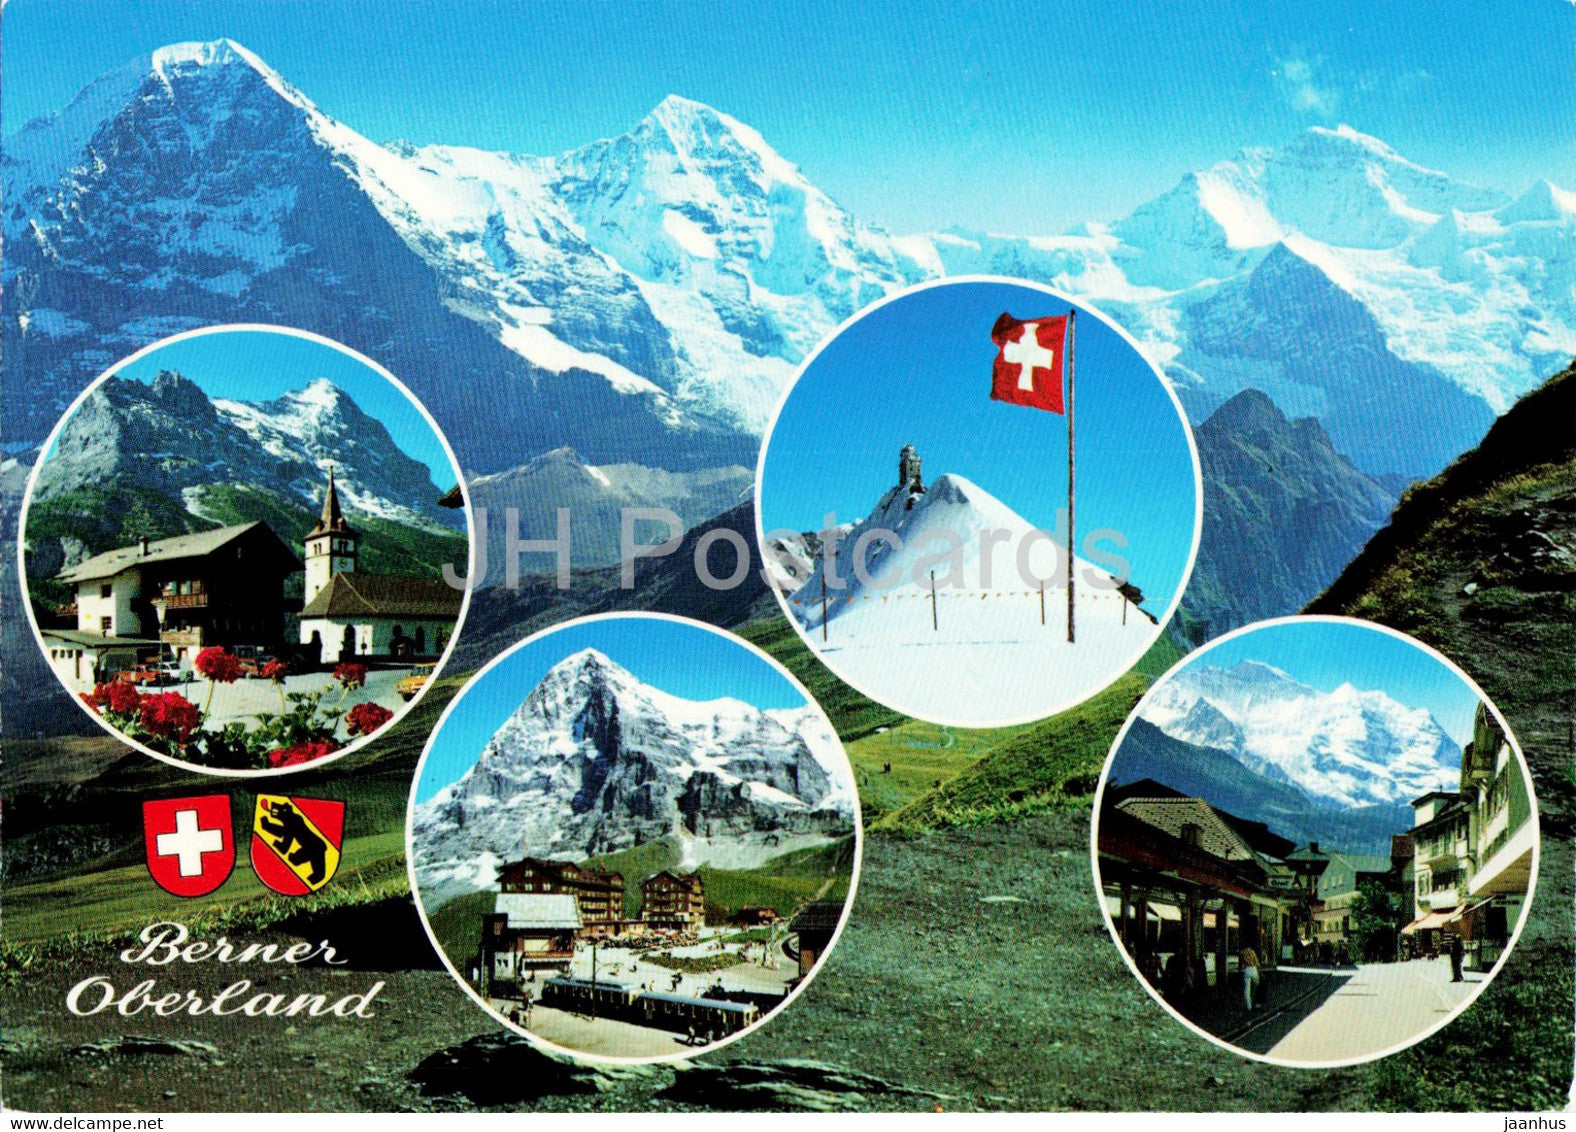 Berner Oberland - Eiger Monch Jungfrau - Grindelwald - Kleine Scheidegg - Jungfraujoch - Switzerland - unused - JH Postcards